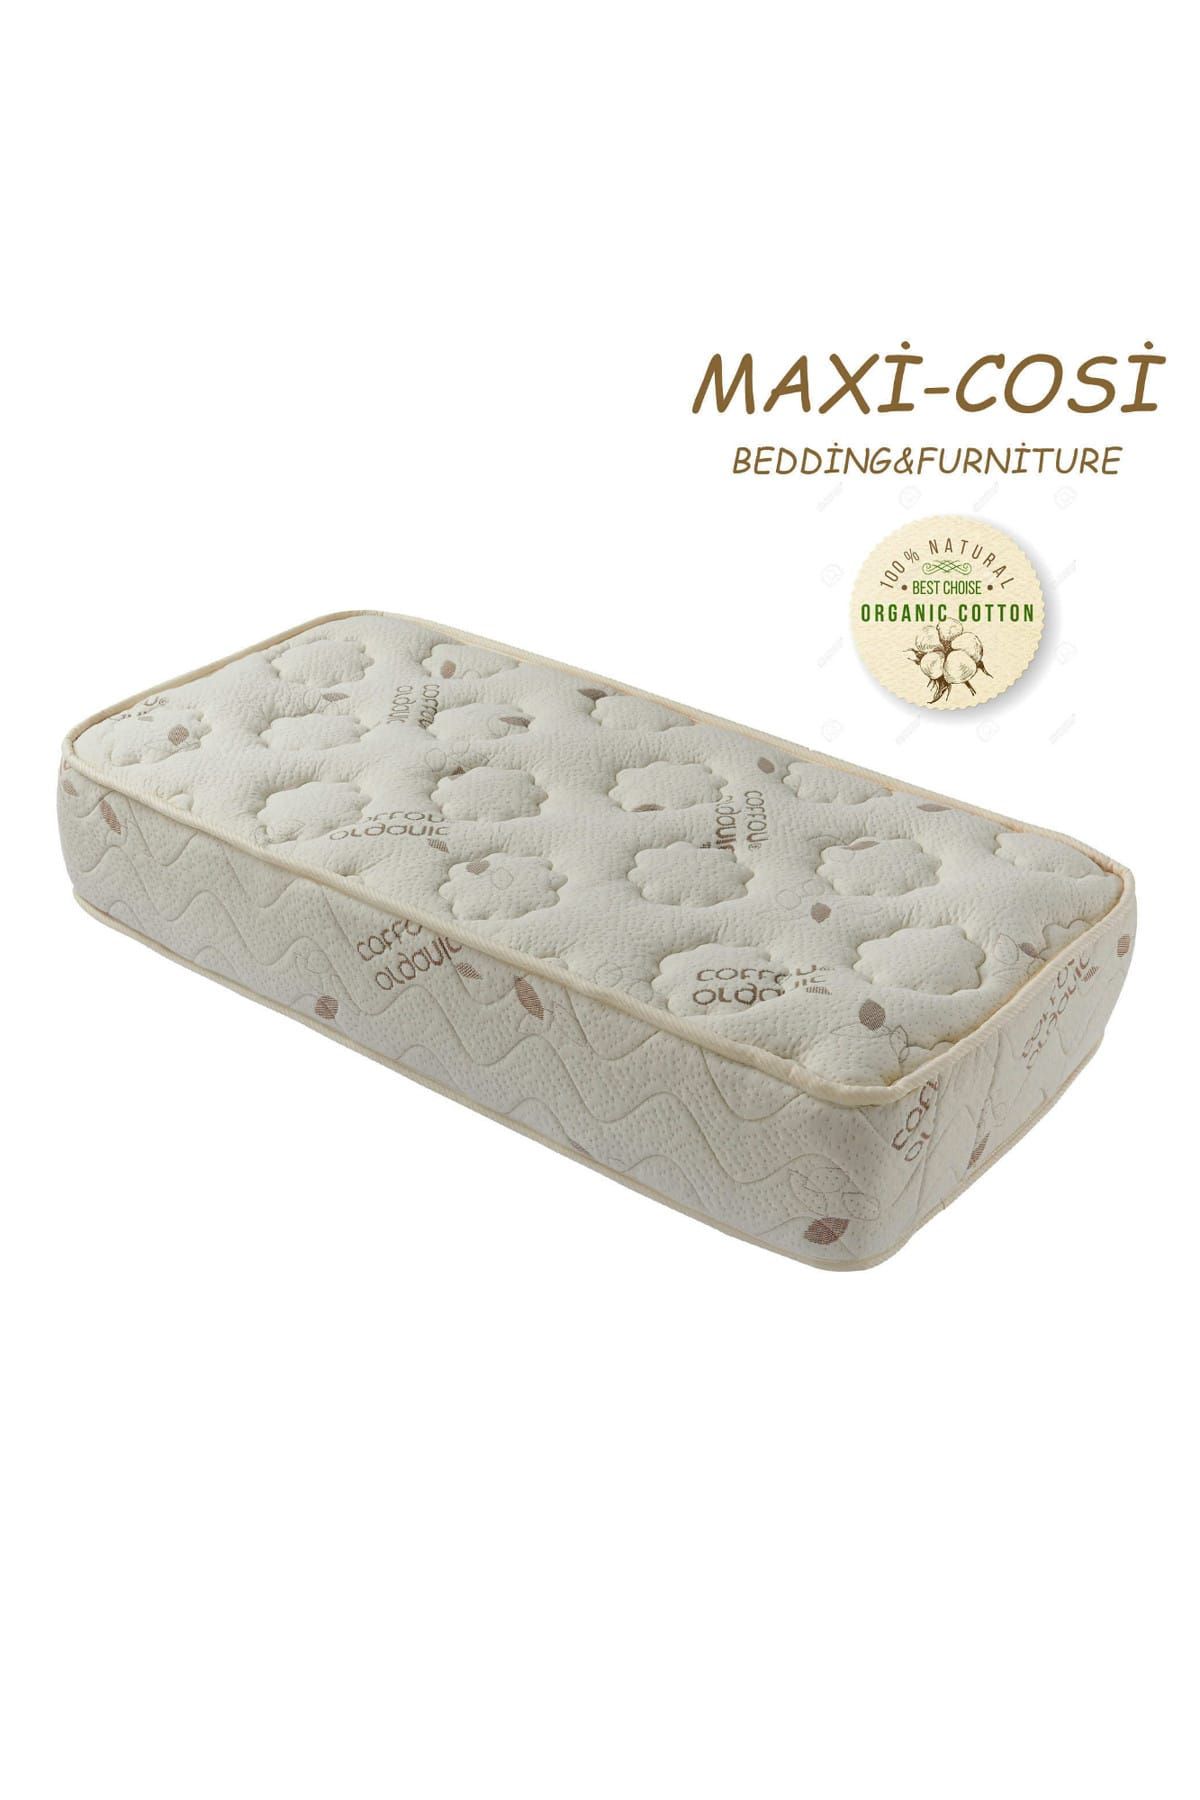 Maxi-Cosi Maxi-Cosi Organik Cotton 60x120 Cm ortopedik Yaylı Yatak